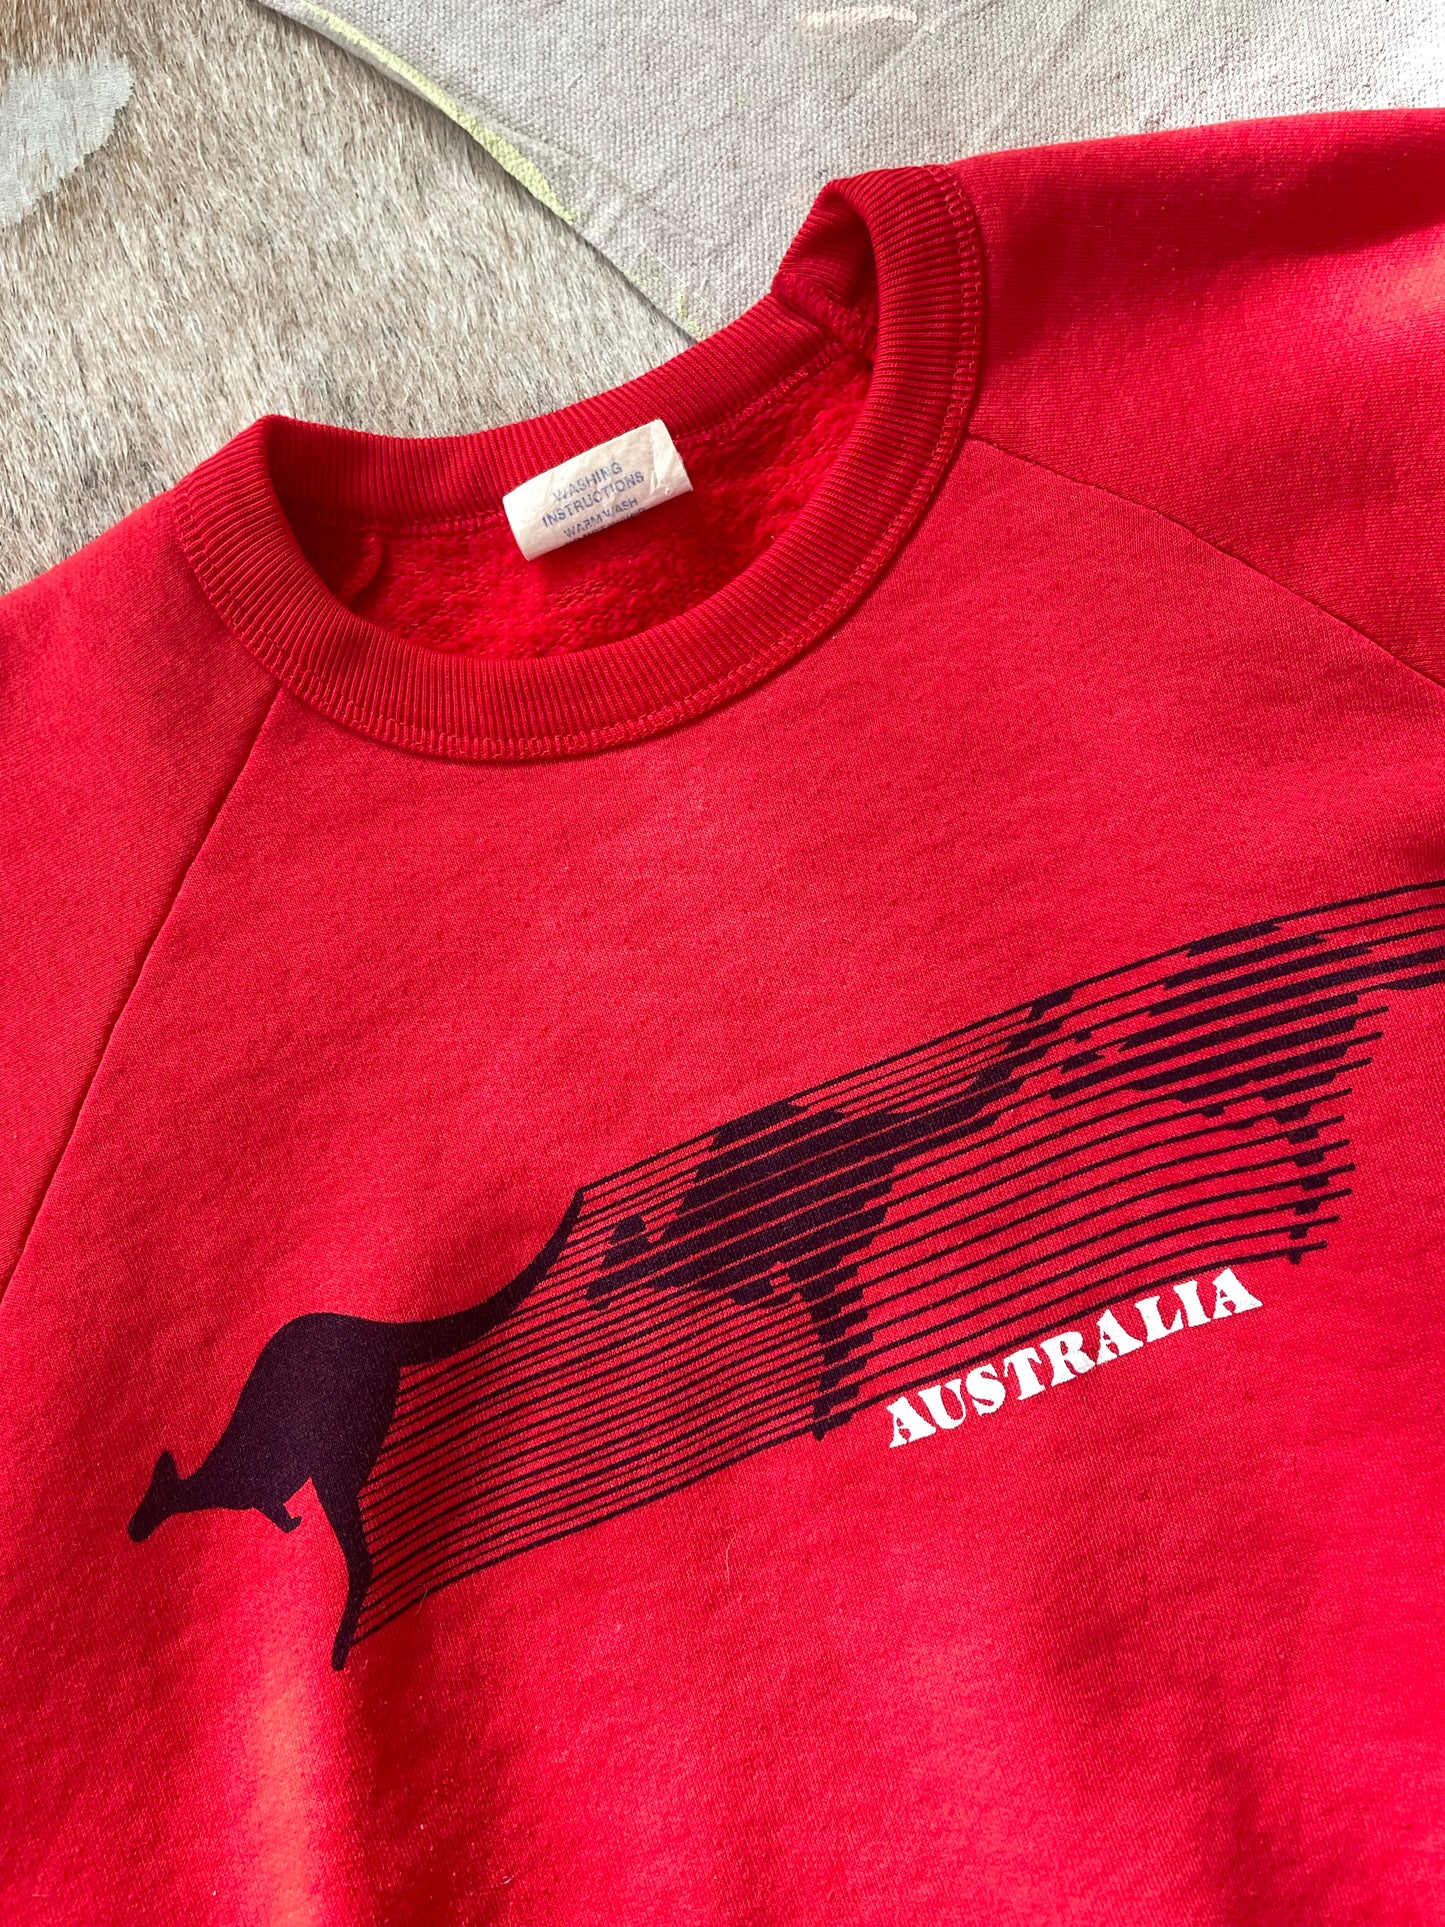 Australia Kangaroo Sweatshirt